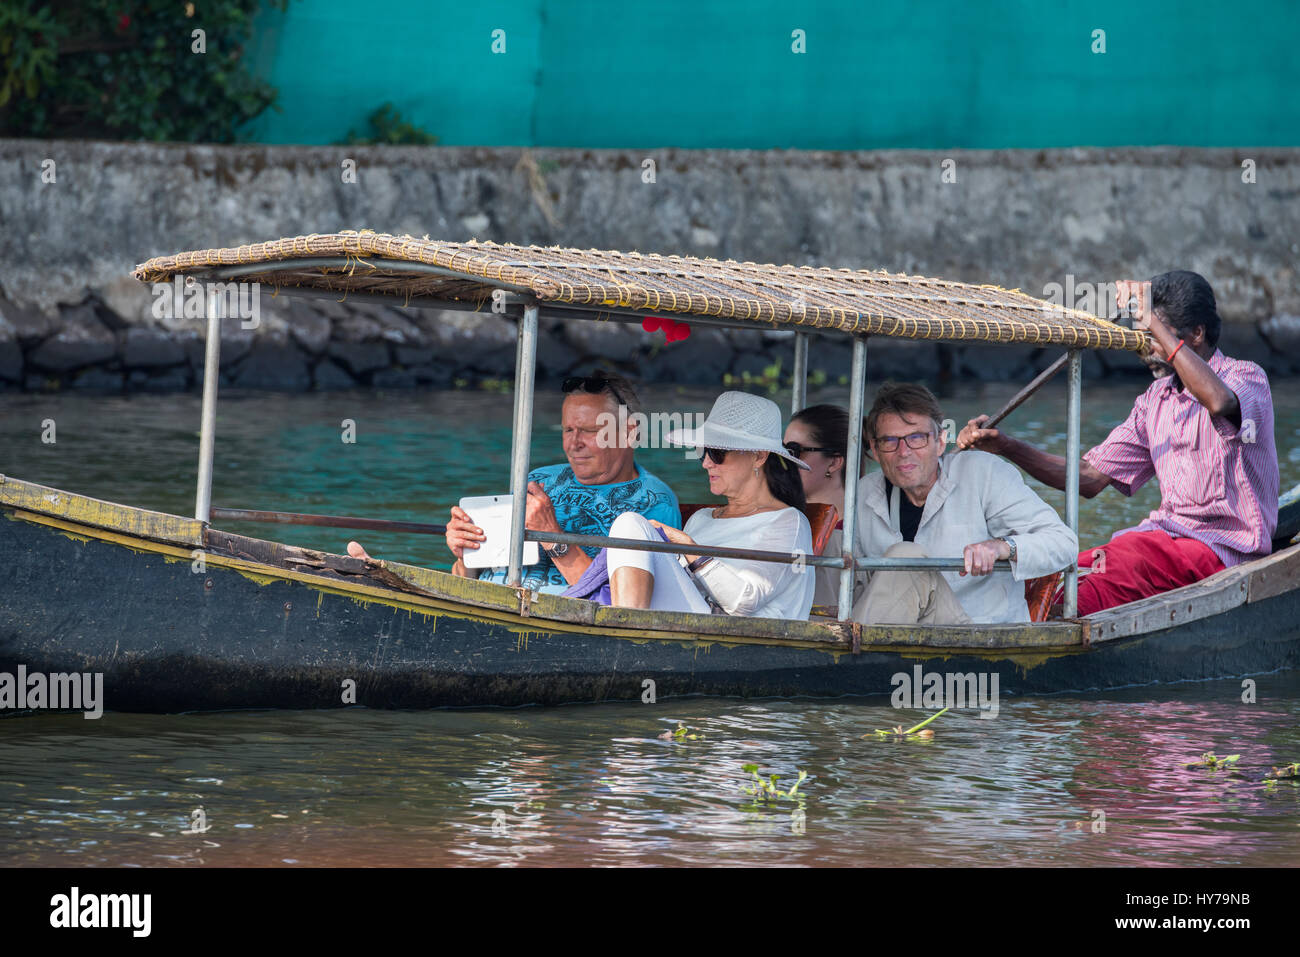 Indien, Bundesstaat Kerala aka Ernakulam, Allepey, der Backwaters. Typischen touristischen Sightseeing-Boot entlang des Kanals und Wasserstraßen der Backwaters. Stockfoto